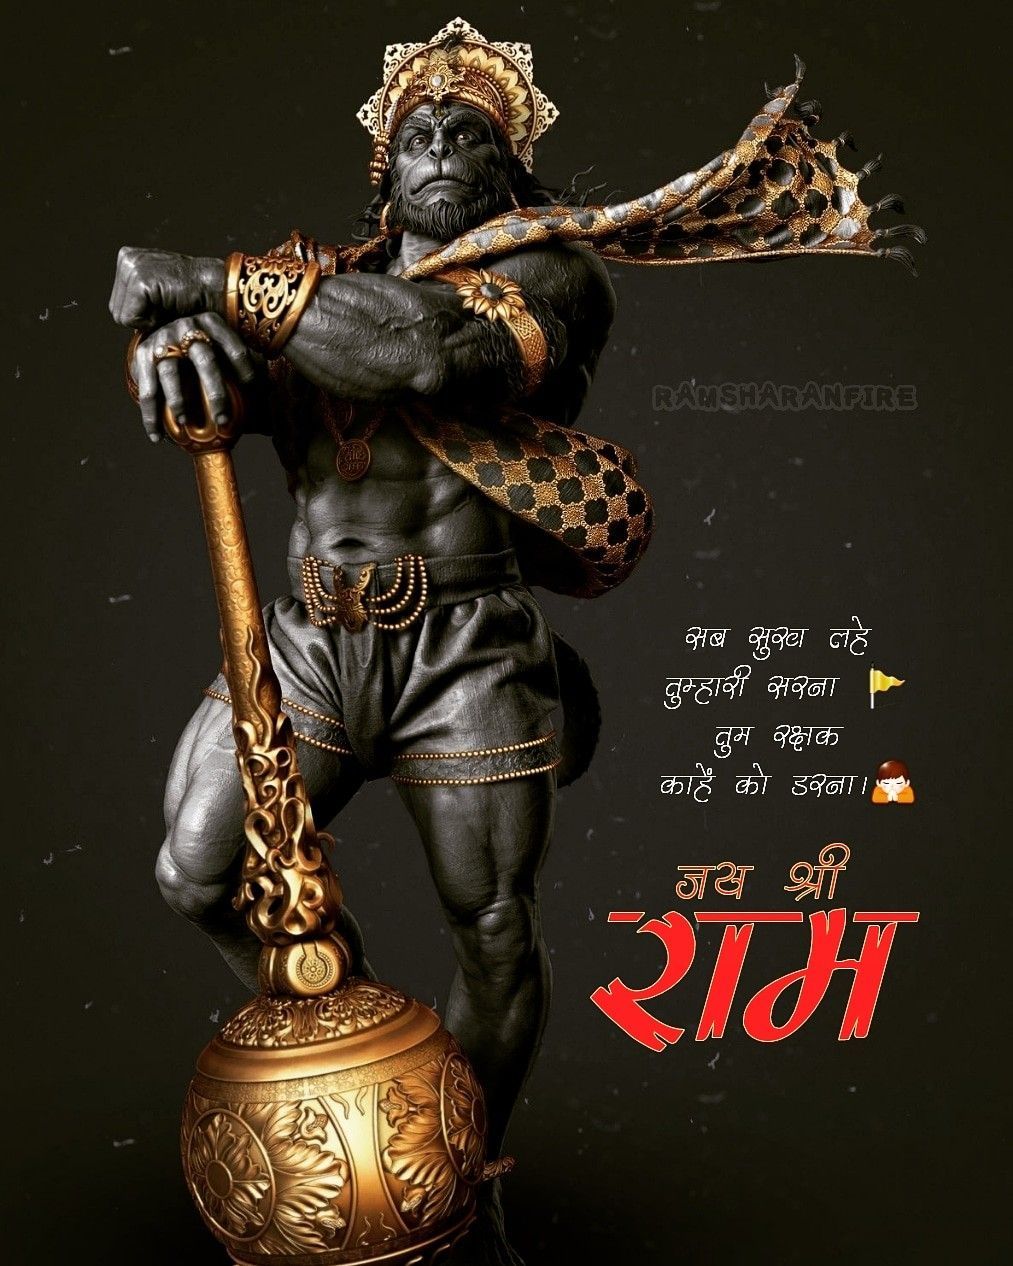 Jai shree ram । ramsharenfire. Hanuman image, Hanuman, Jai hanuman